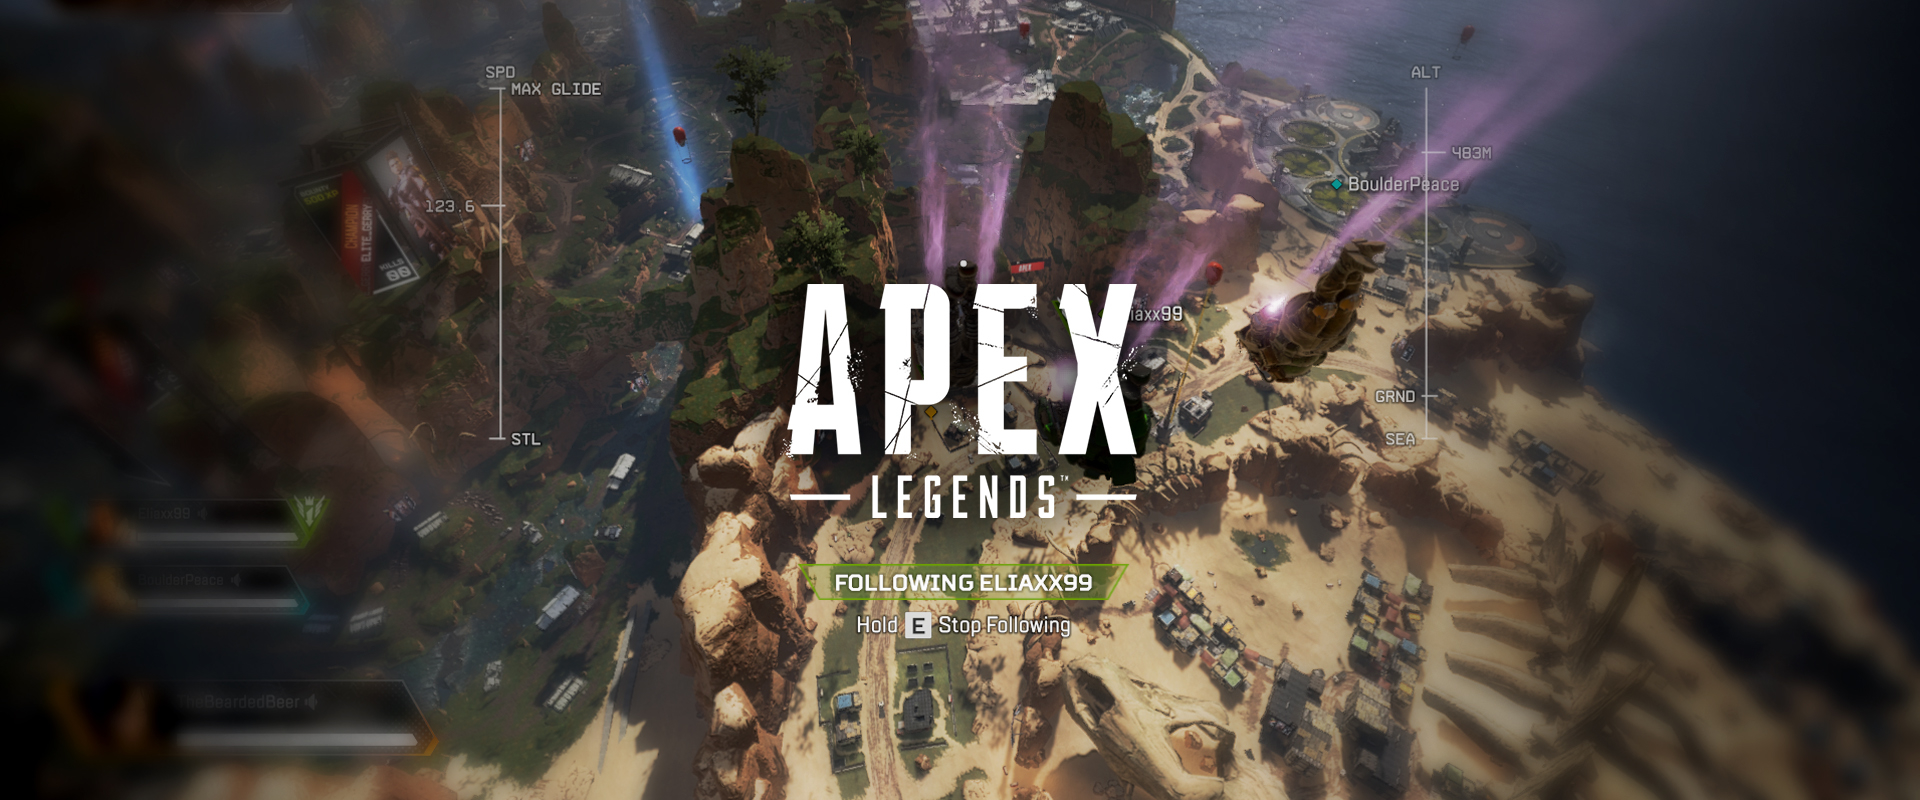 Tökéletes Battle Royale lehet az Apex Legends